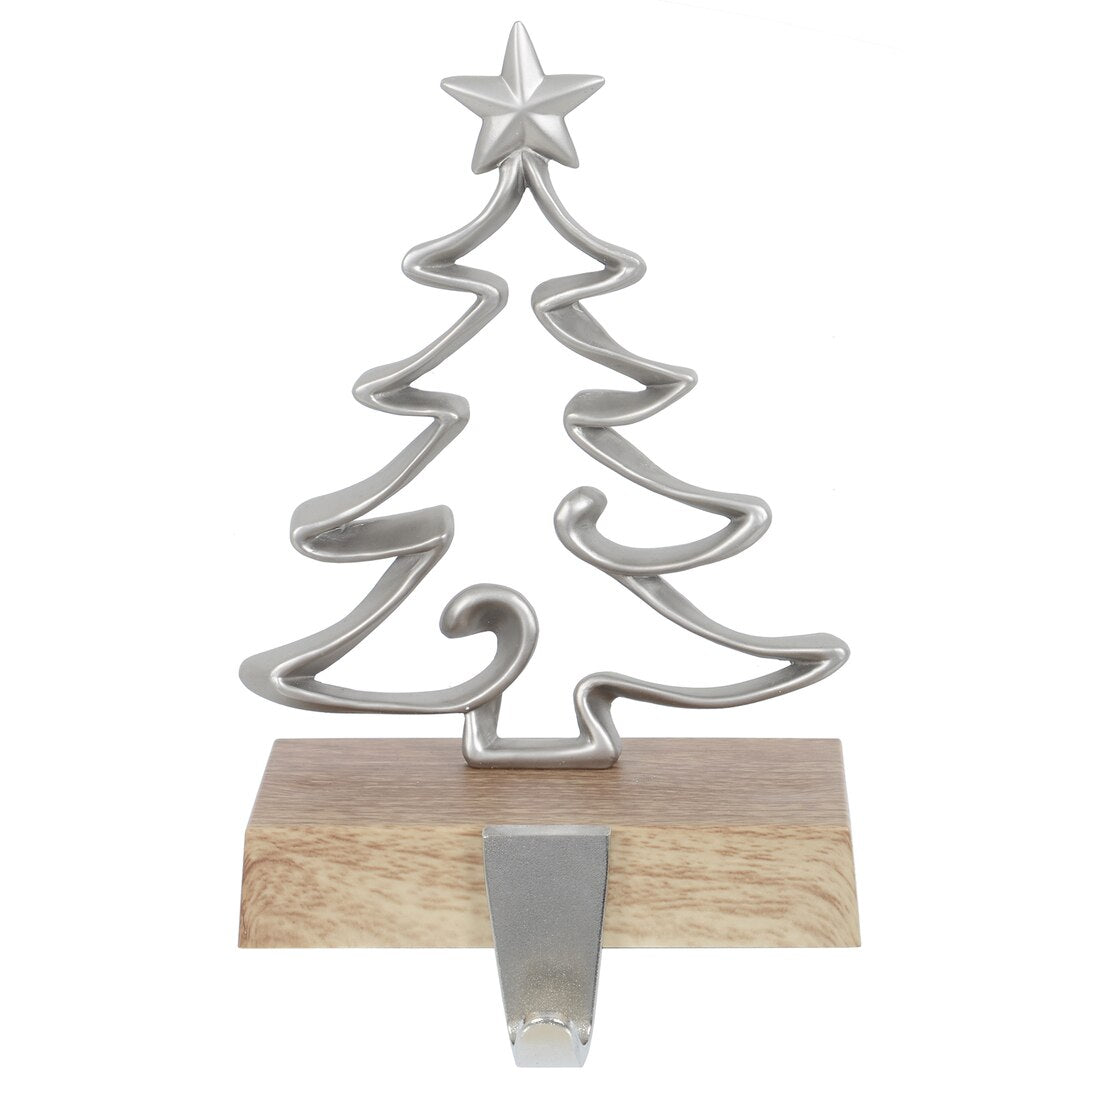 Mr Crimbo Christmas Stocking Hanger Metal With Faux Wood Base - MrCrimbo.co.uk -XS6485 - Tree -christmas decorations